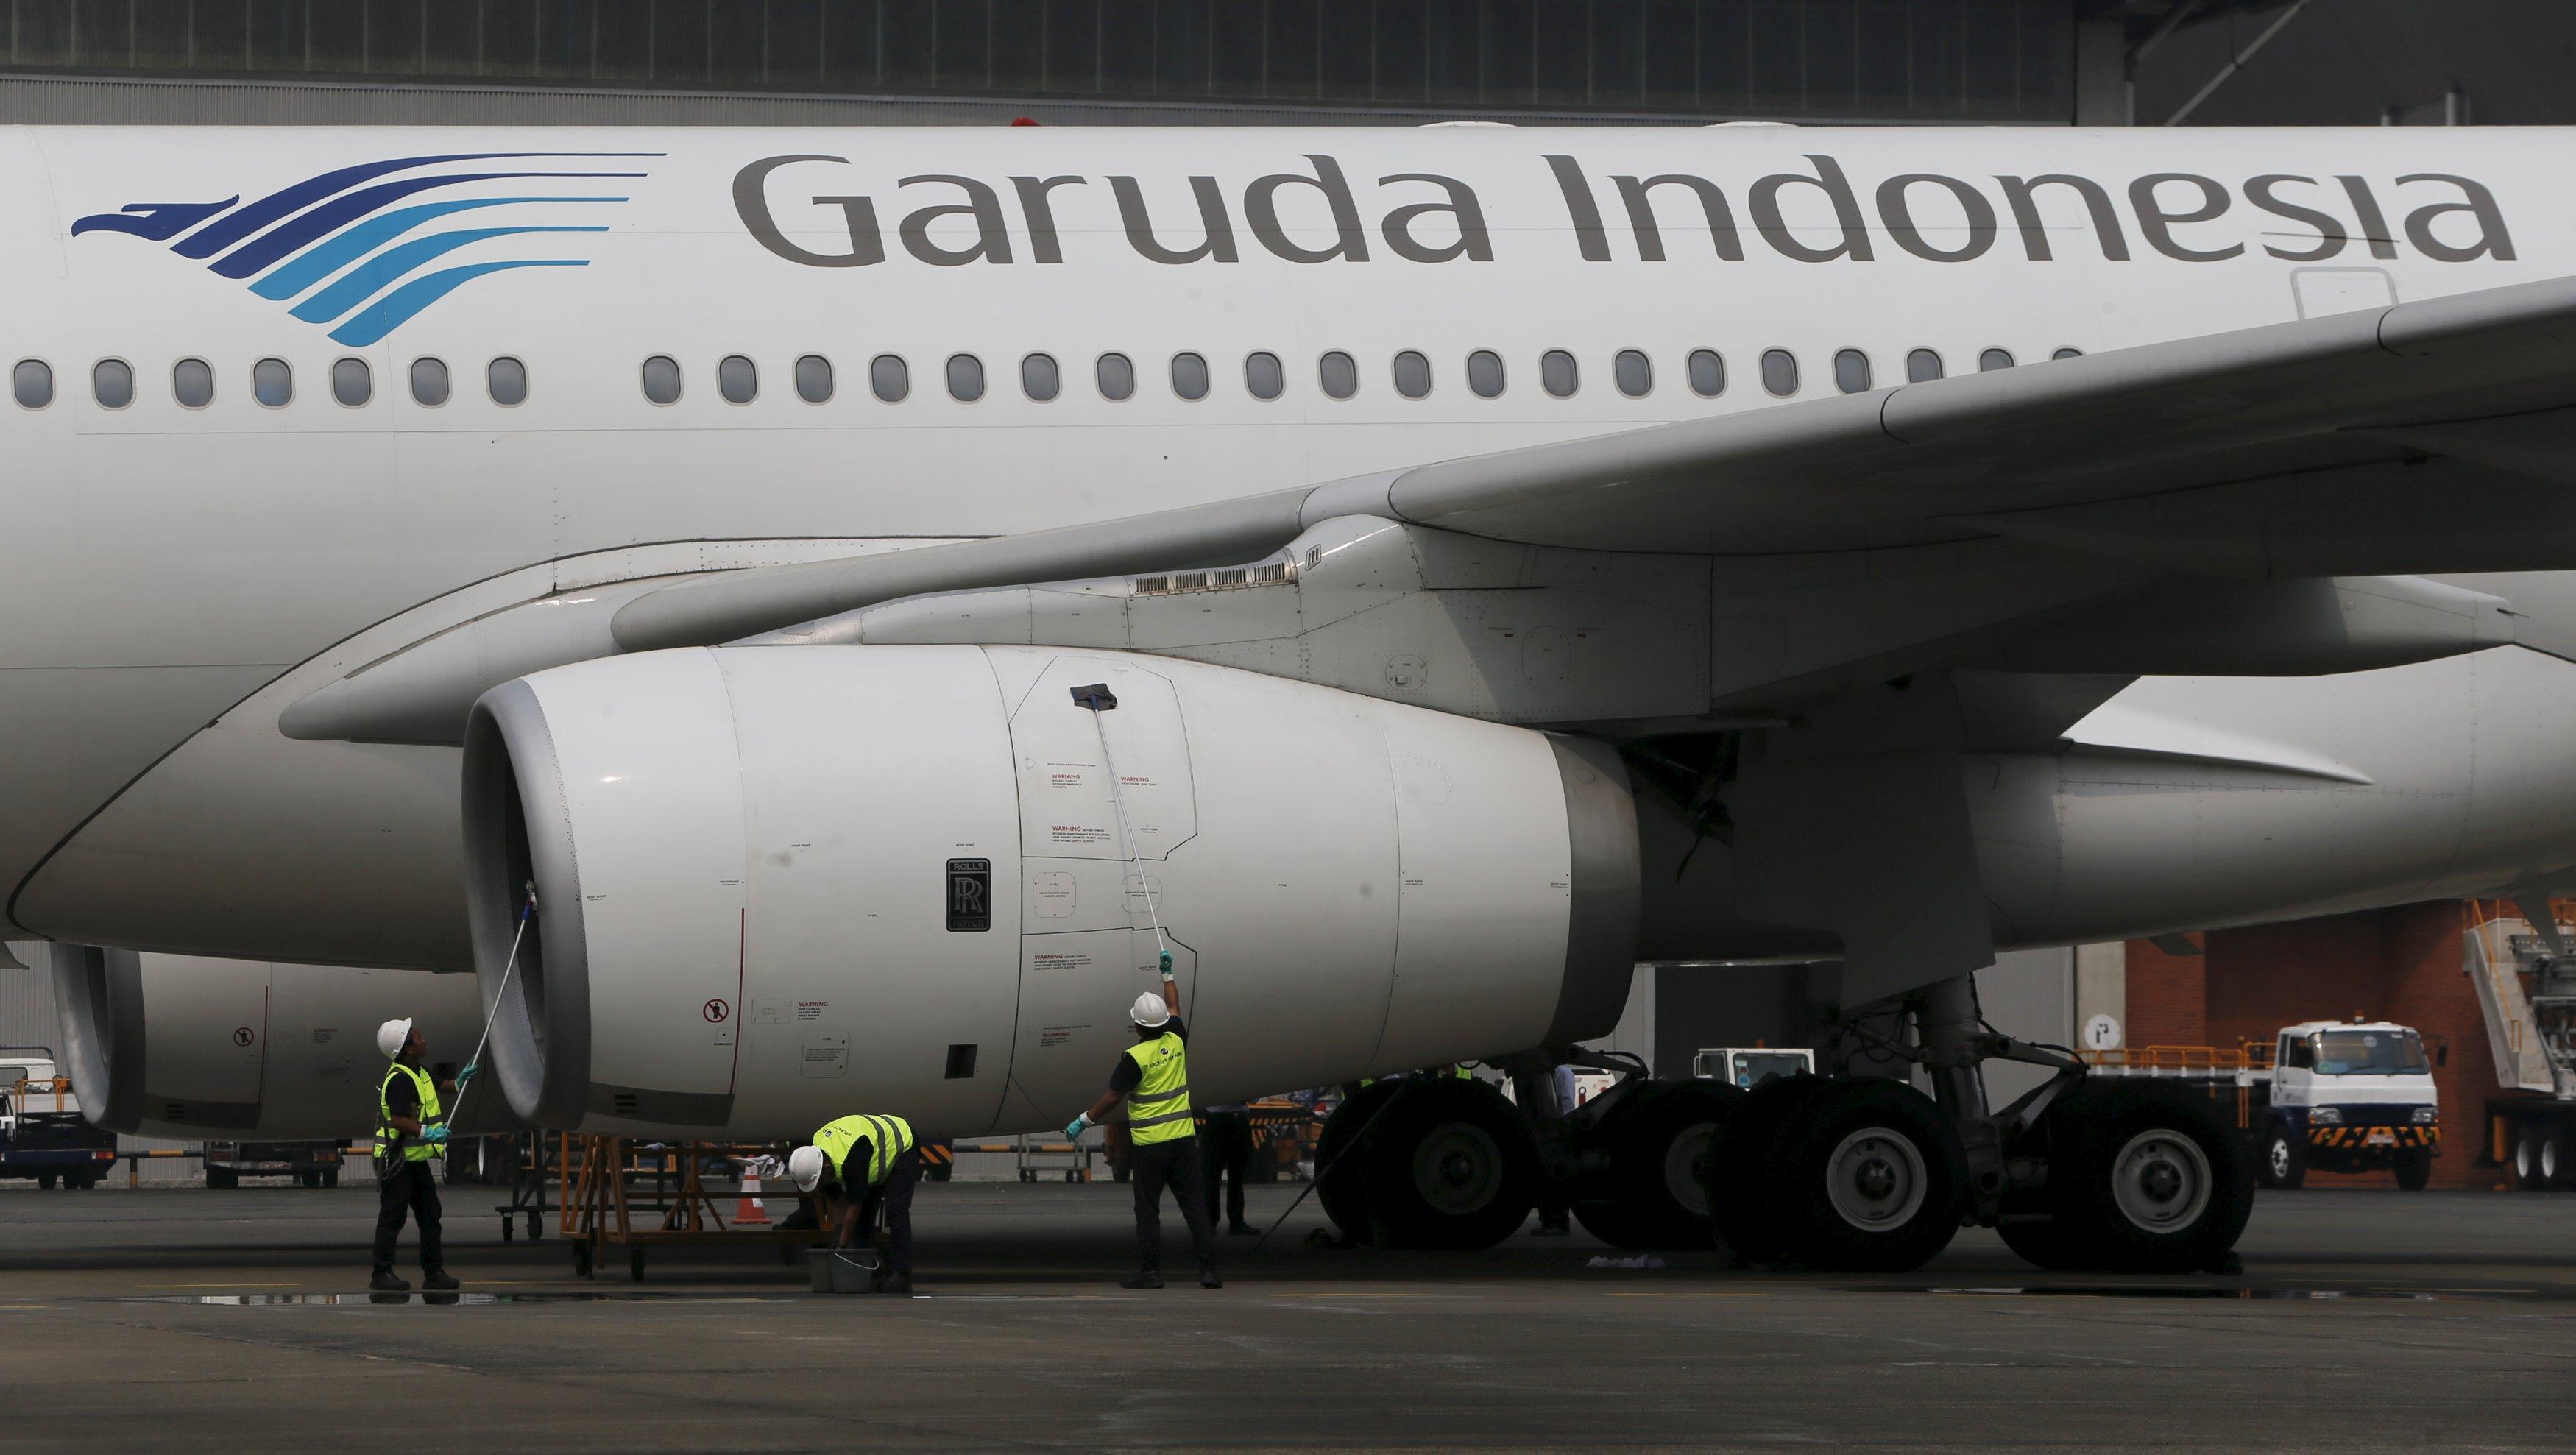 6 Tahun Garuda Indonesia Lepas Landas di Pasar Modal, Begini Kinerjanya